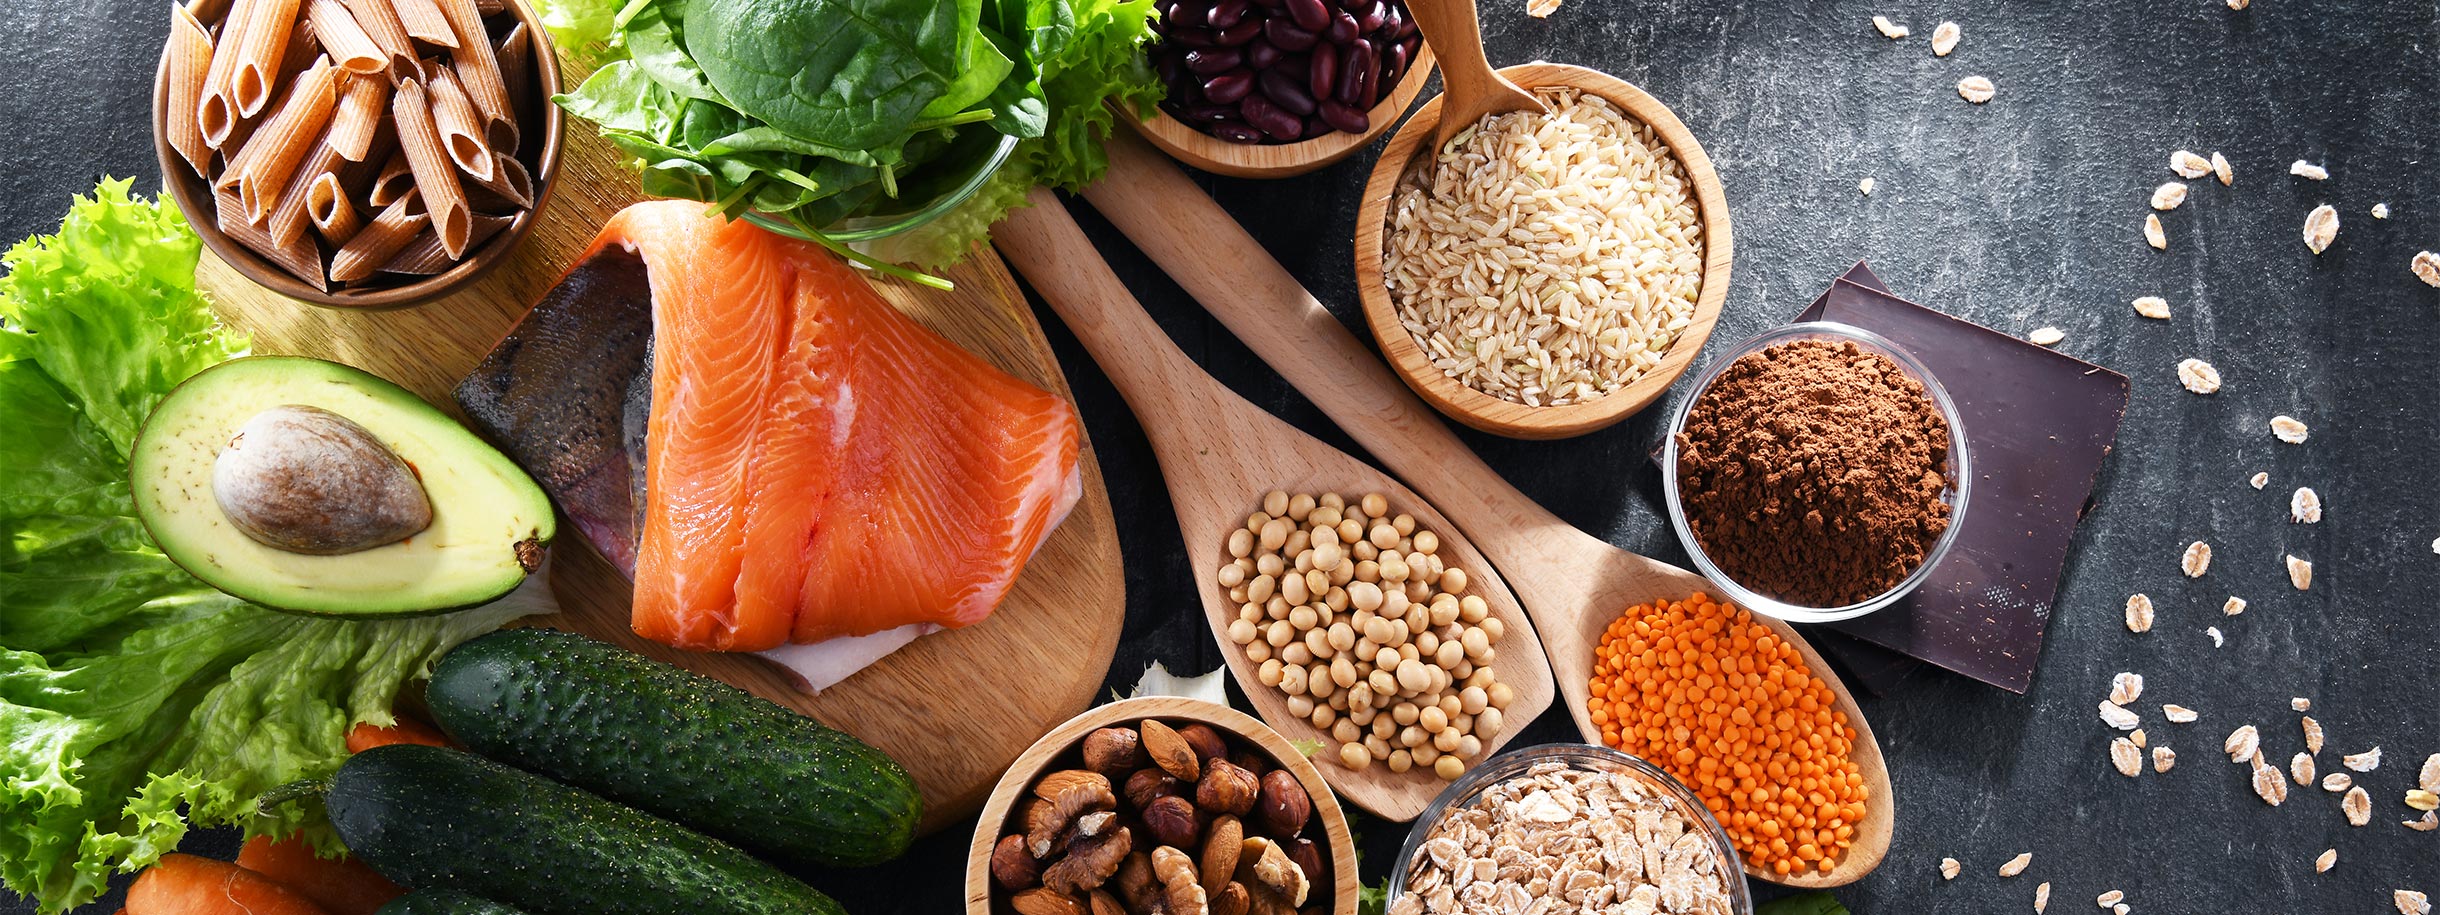 健康食品的圖像，包括鮭魚、酪梨、堅果、種子、黃瓜、綠葉蔬菜等